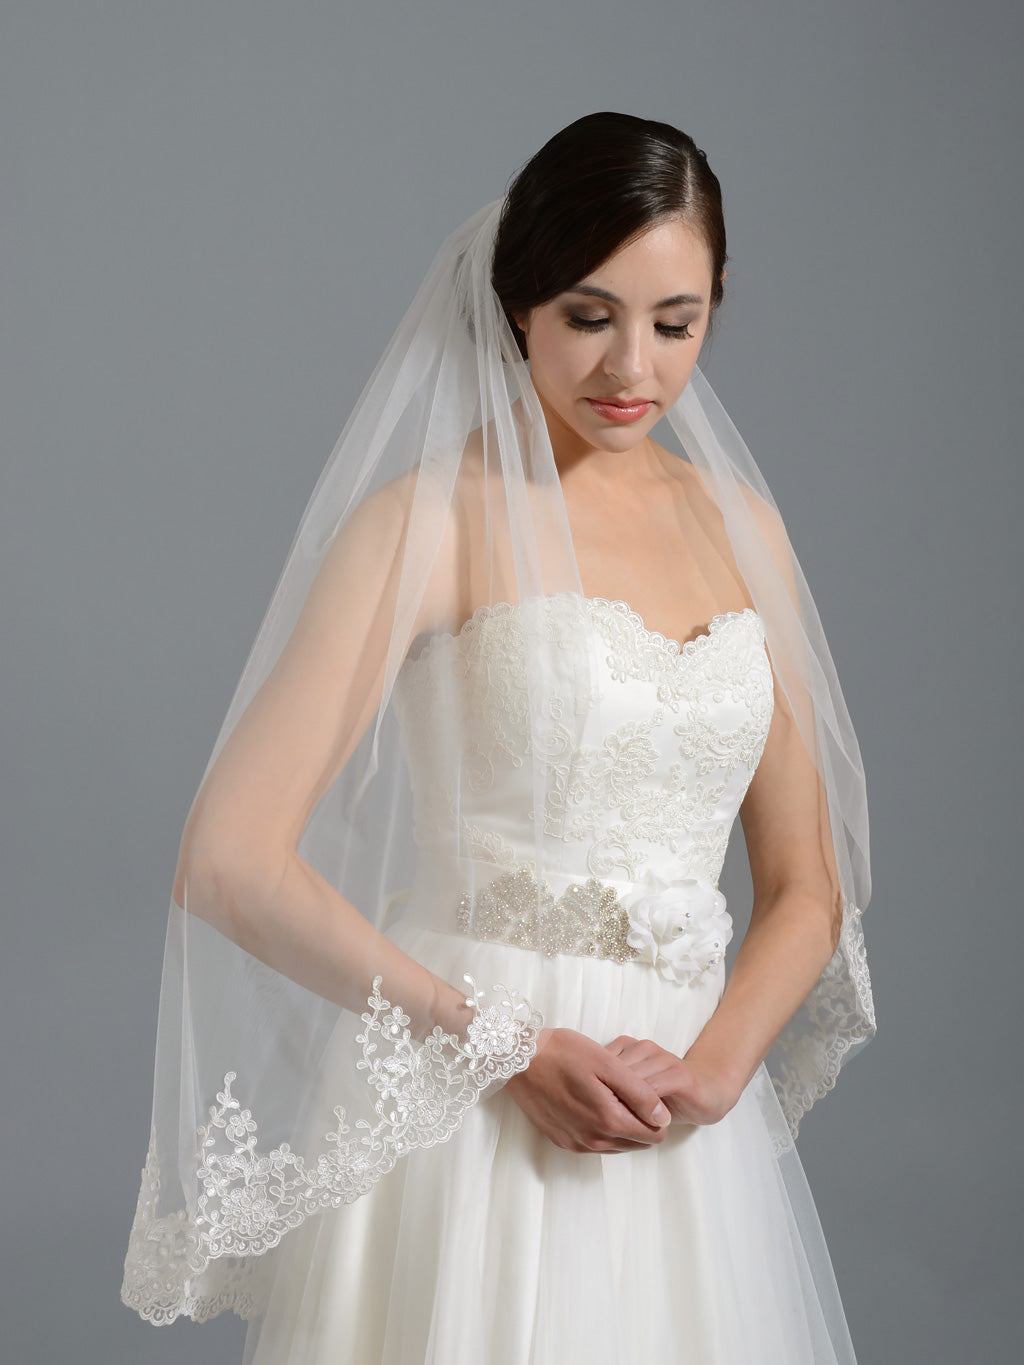 Ivory elbow alencon lace wedding veil V037n